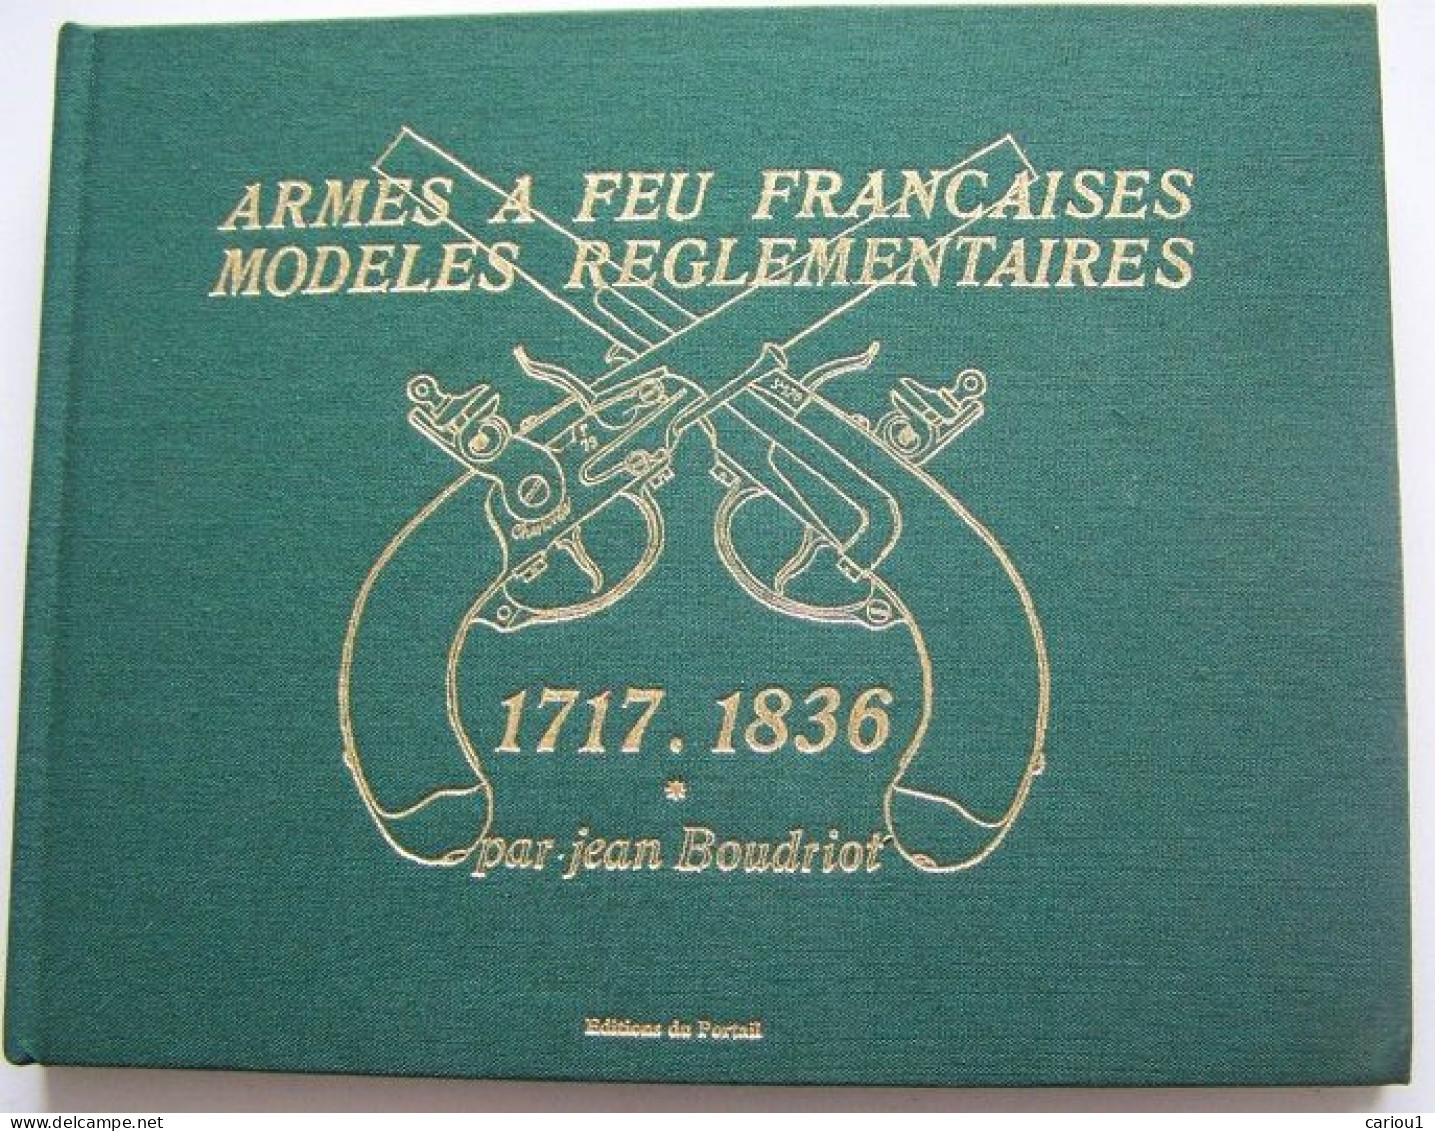 C1  Boudriot ARMES A FEU FRANCAISES 1717 1836 Tome 1 1997 Relie ILLUSTRE - Français